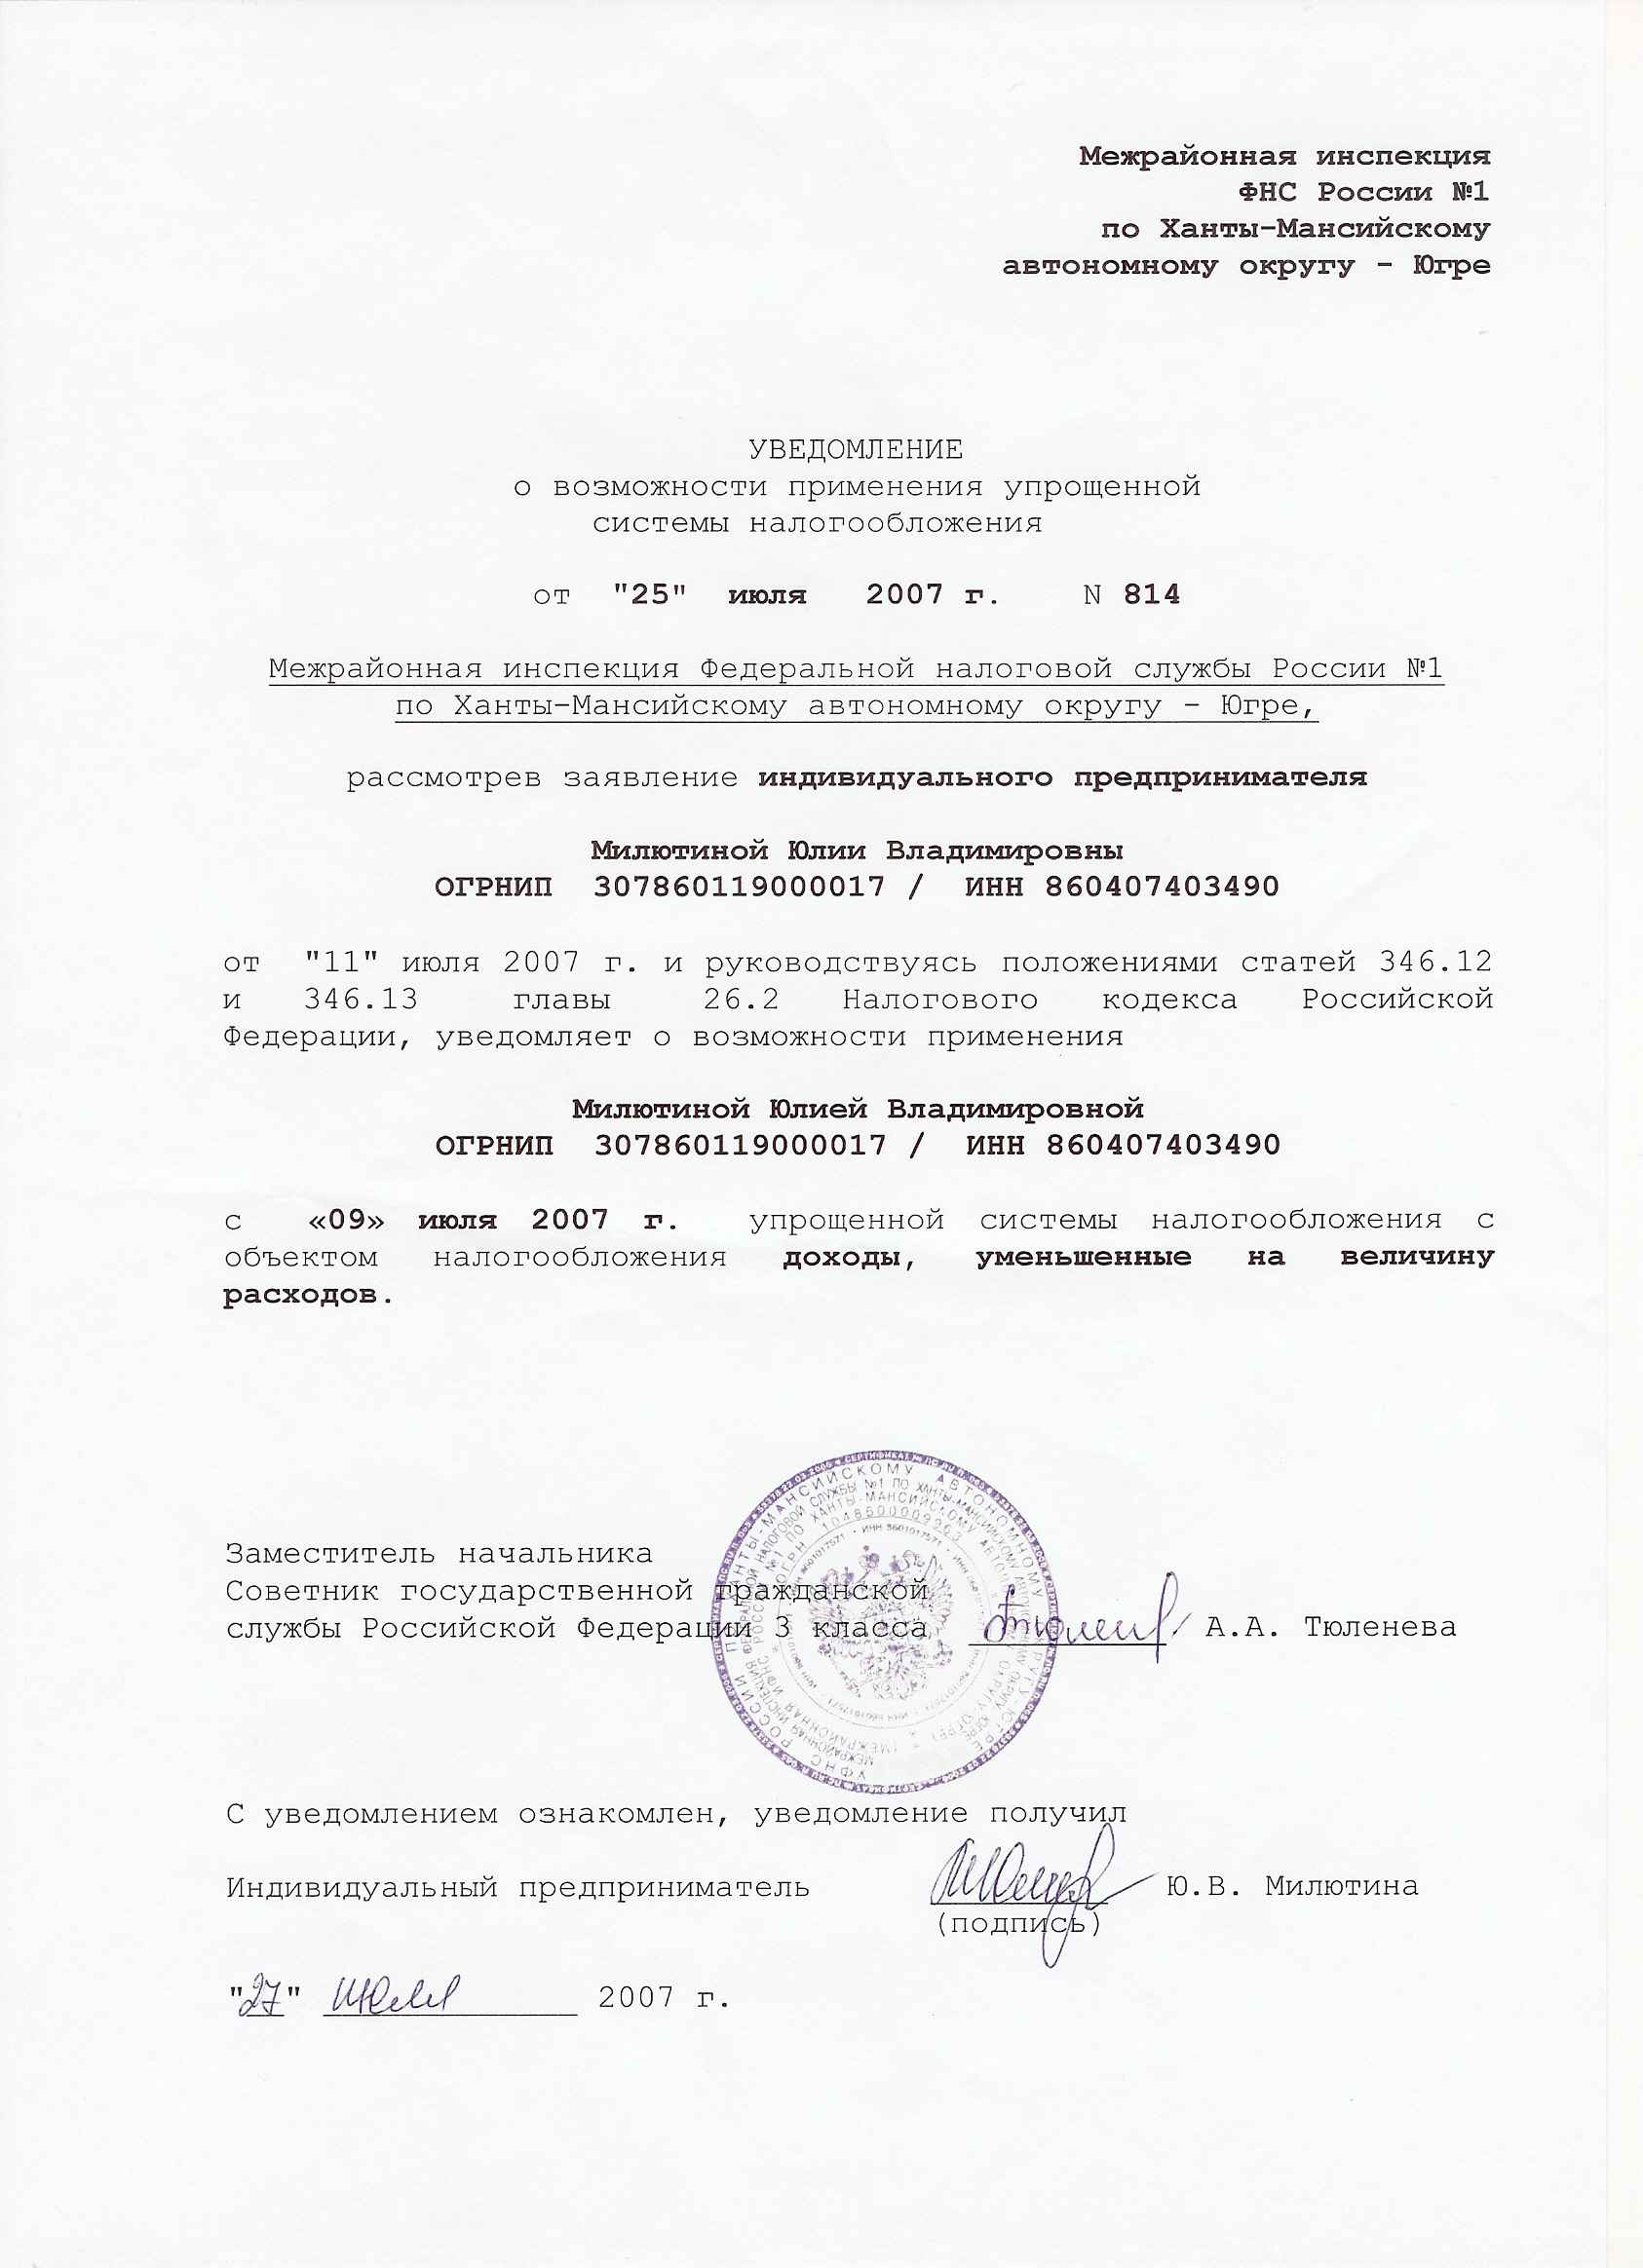 Применение упрощенной системы налогообложения от 25 июля 2007 года. Выдано Межрайонной инспекцией Федеральной налоговой службы № 1 по
Ханты-Мансийскому автономному округу-Югре.